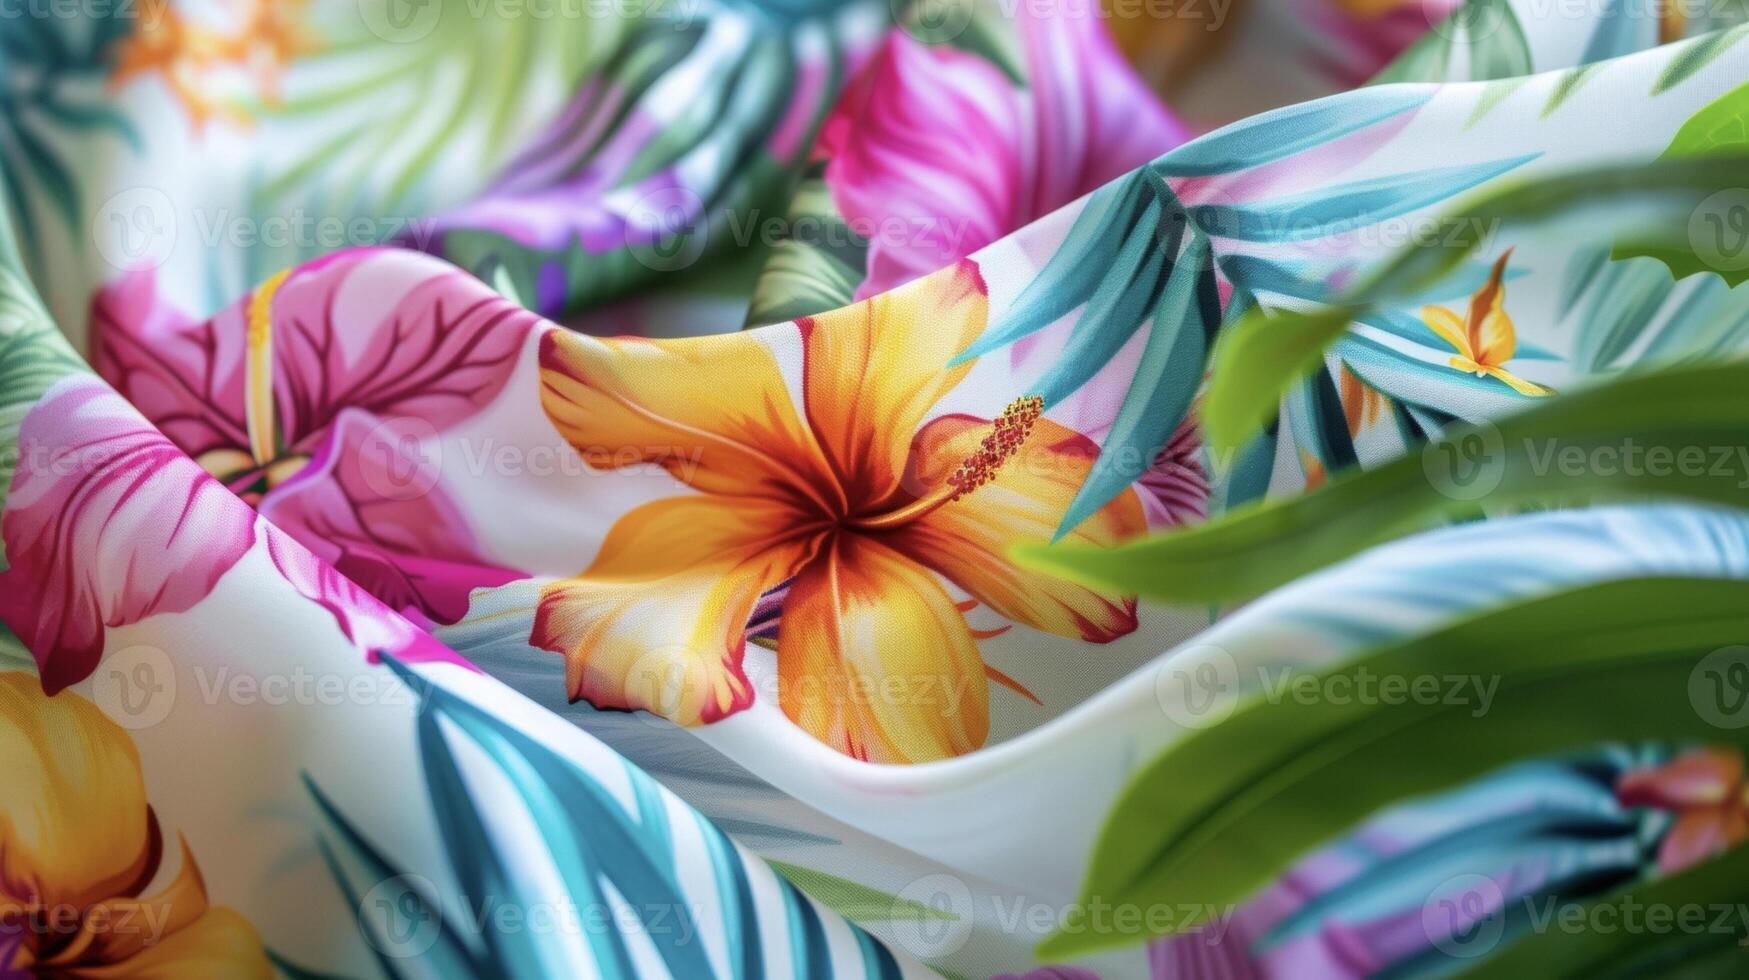 transport toi même à une isolé plage avec cette sarong emballage dans une coloré mosaïque impression de tropical fleurs et feuilles photo